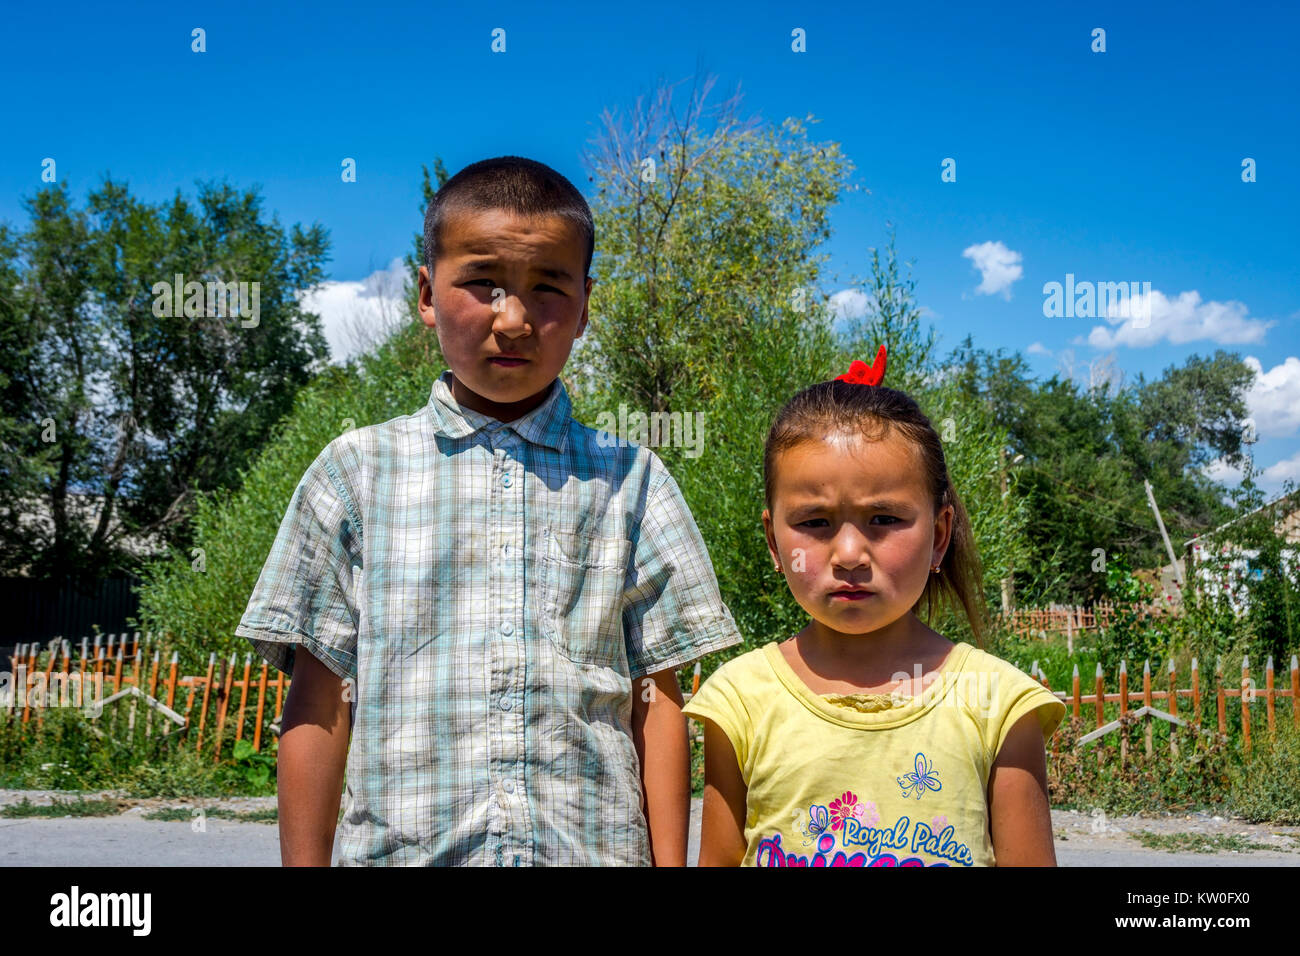 UGUT, KIRGHIZISTAN - Le 16 août : frères et Sœurs, un frère et une soeur qui posent avec de sérieux de l'expression du visage. Ugut est un village isolé au Kirghizistan. Août 201 Banque D'Images